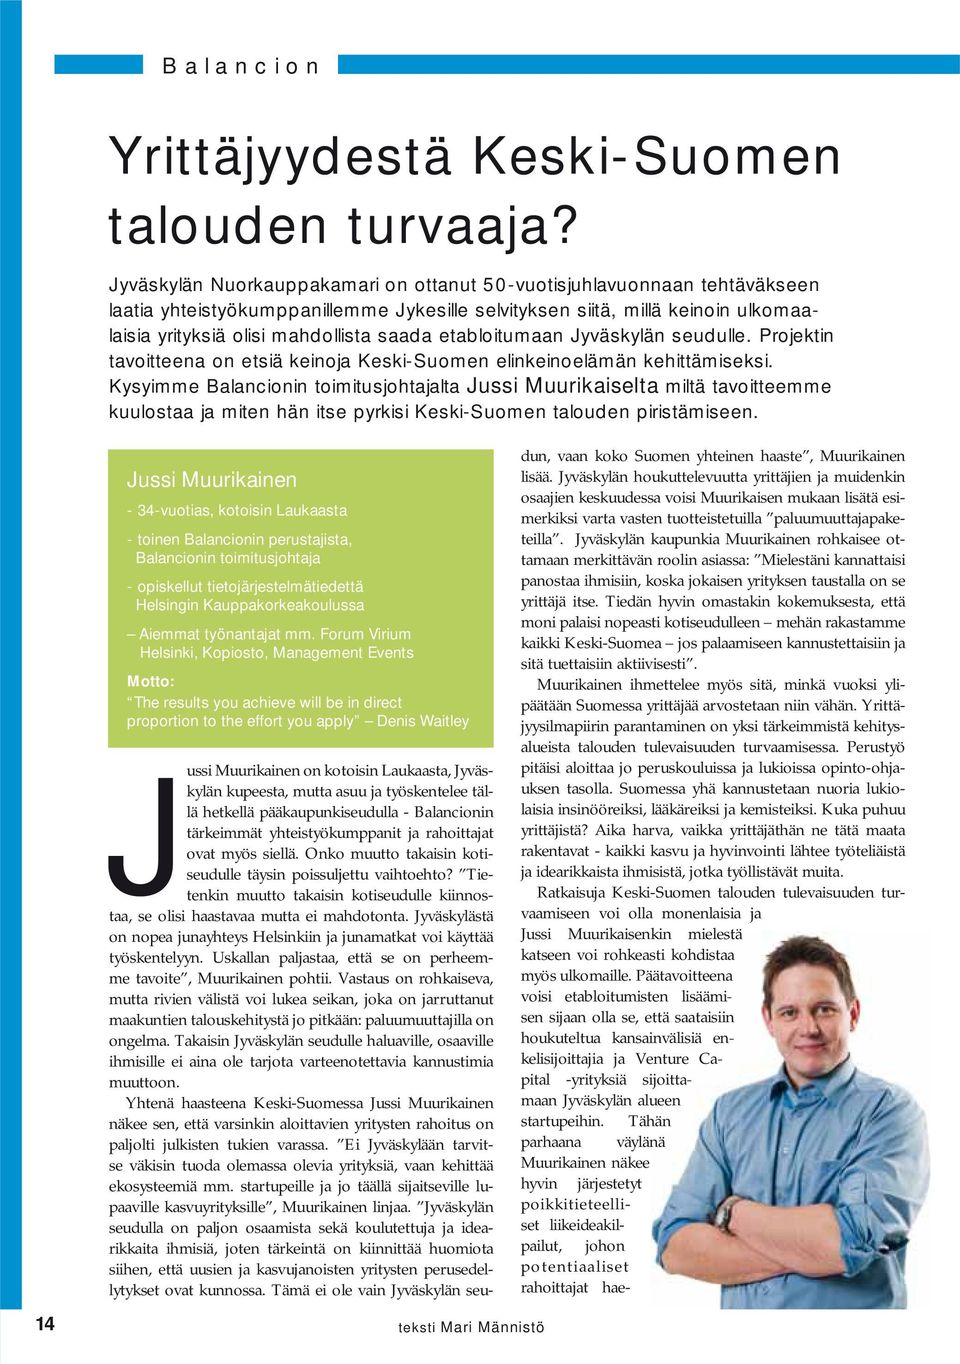 etabloitumaan Jyväskylän seudulle. Projektin tavoitteena on etsiä keinoja Keski-Suomen elinkeinoelämän kehittämiseksi.